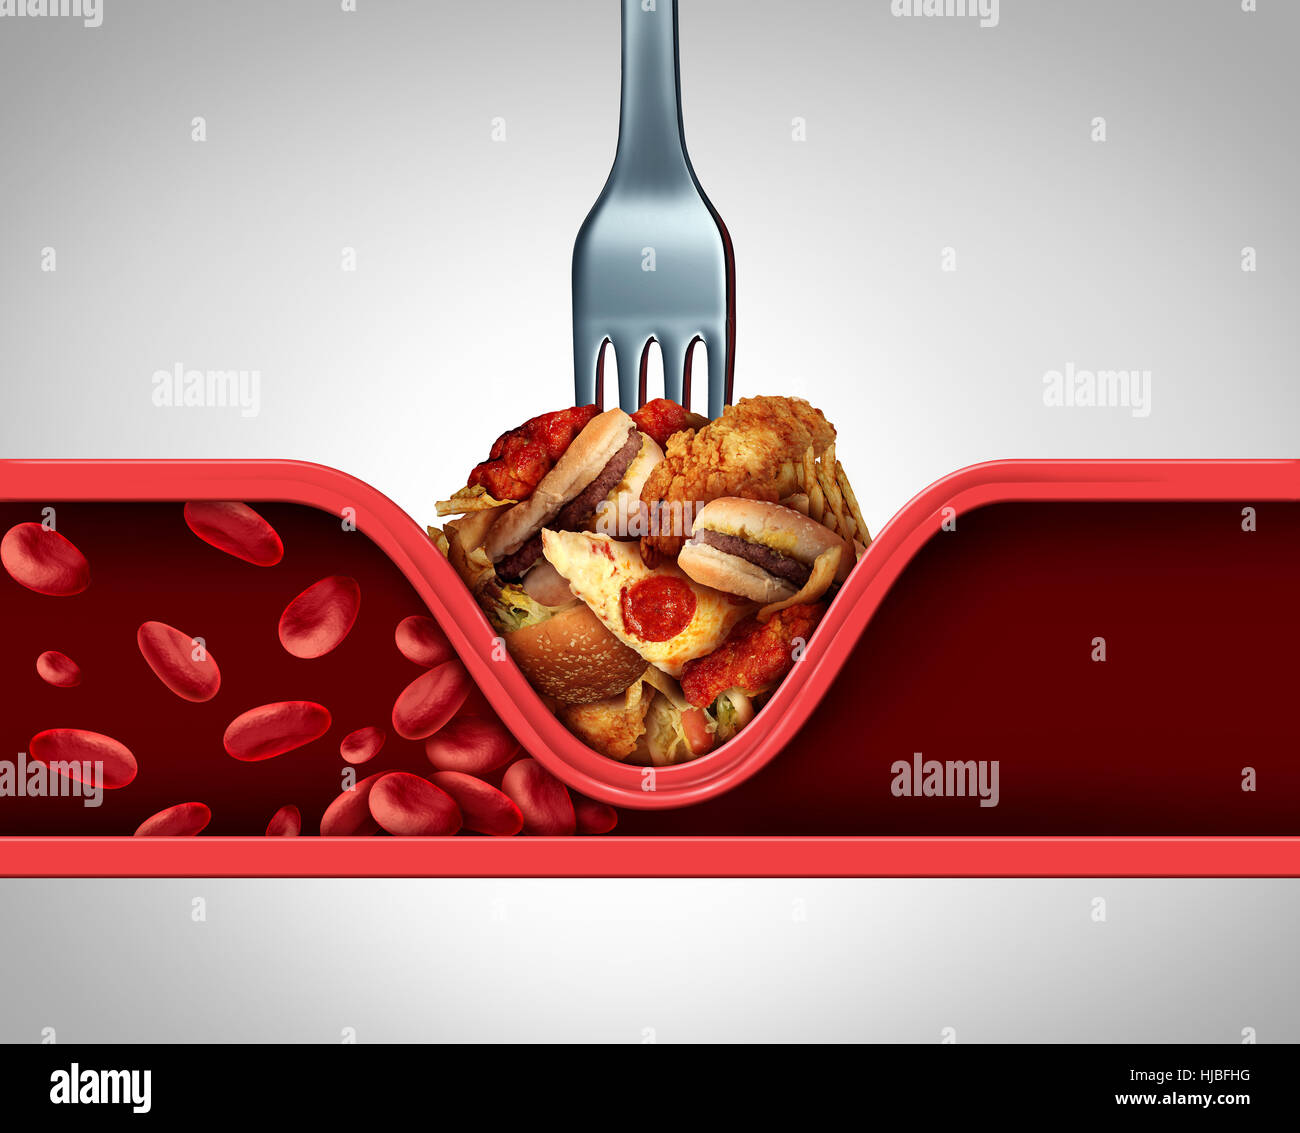 Schlechte Durchblutung Essen und Ursache der verstopften Arterie oder menschliche Vene als eine Gabel mit fettiges Fastfood verursacht Verengung der Arterien blockiert Blutfluss zum t Stockfoto